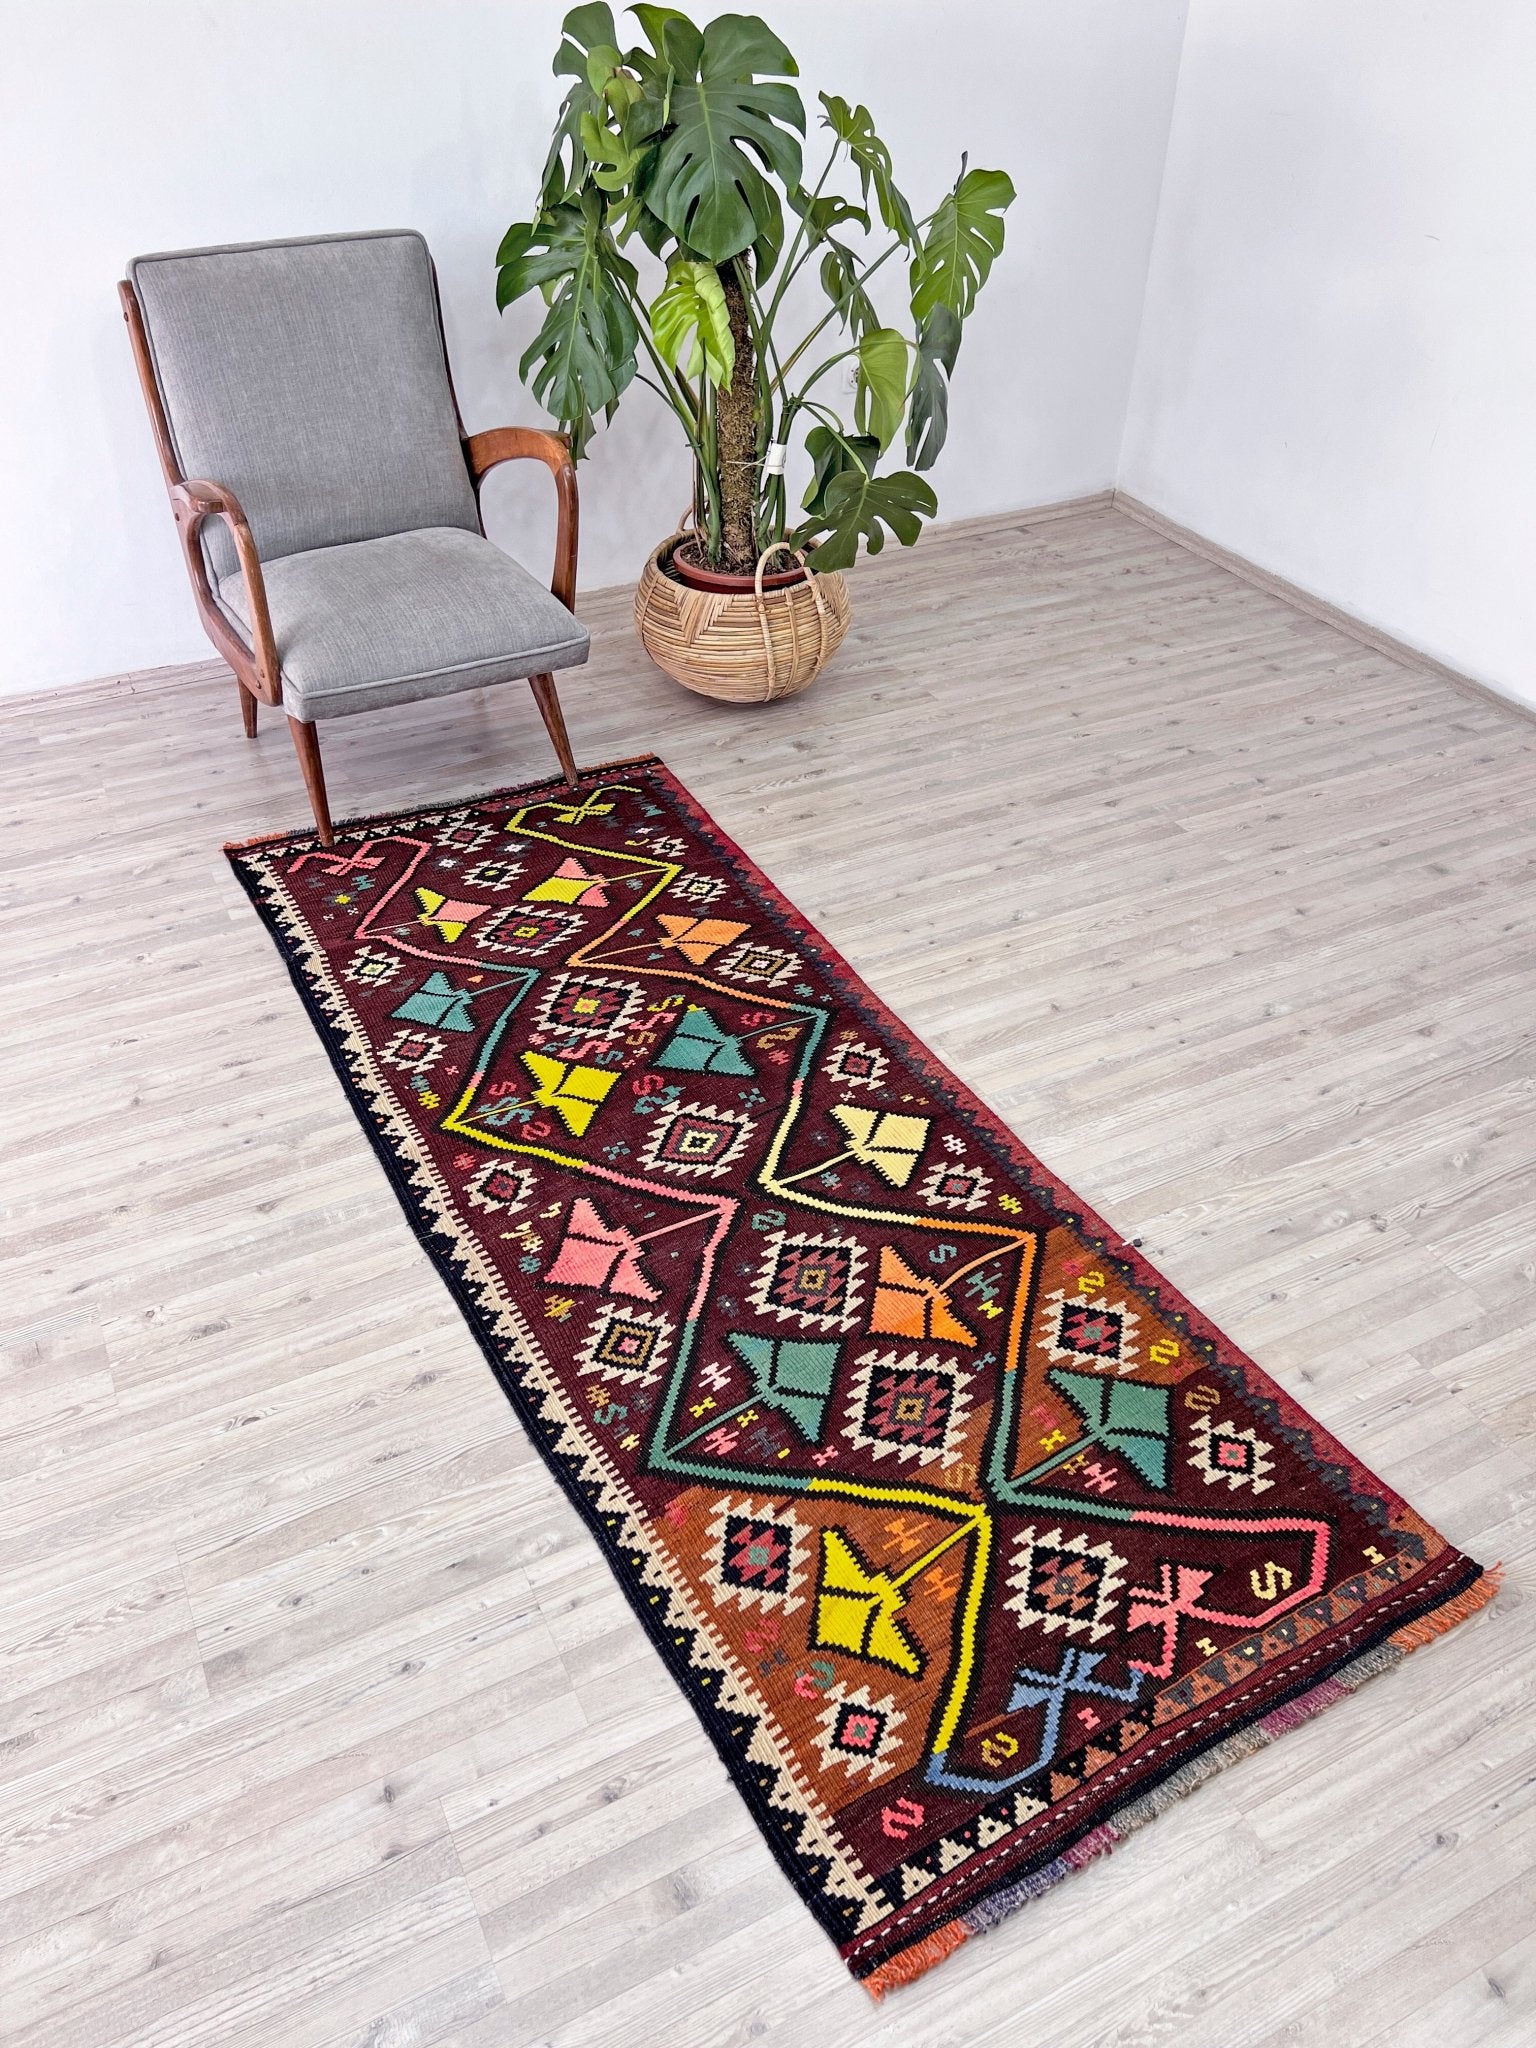 oriental runner rug san francisco bay area vintage rug shop berkeley palo alto buy rug online california